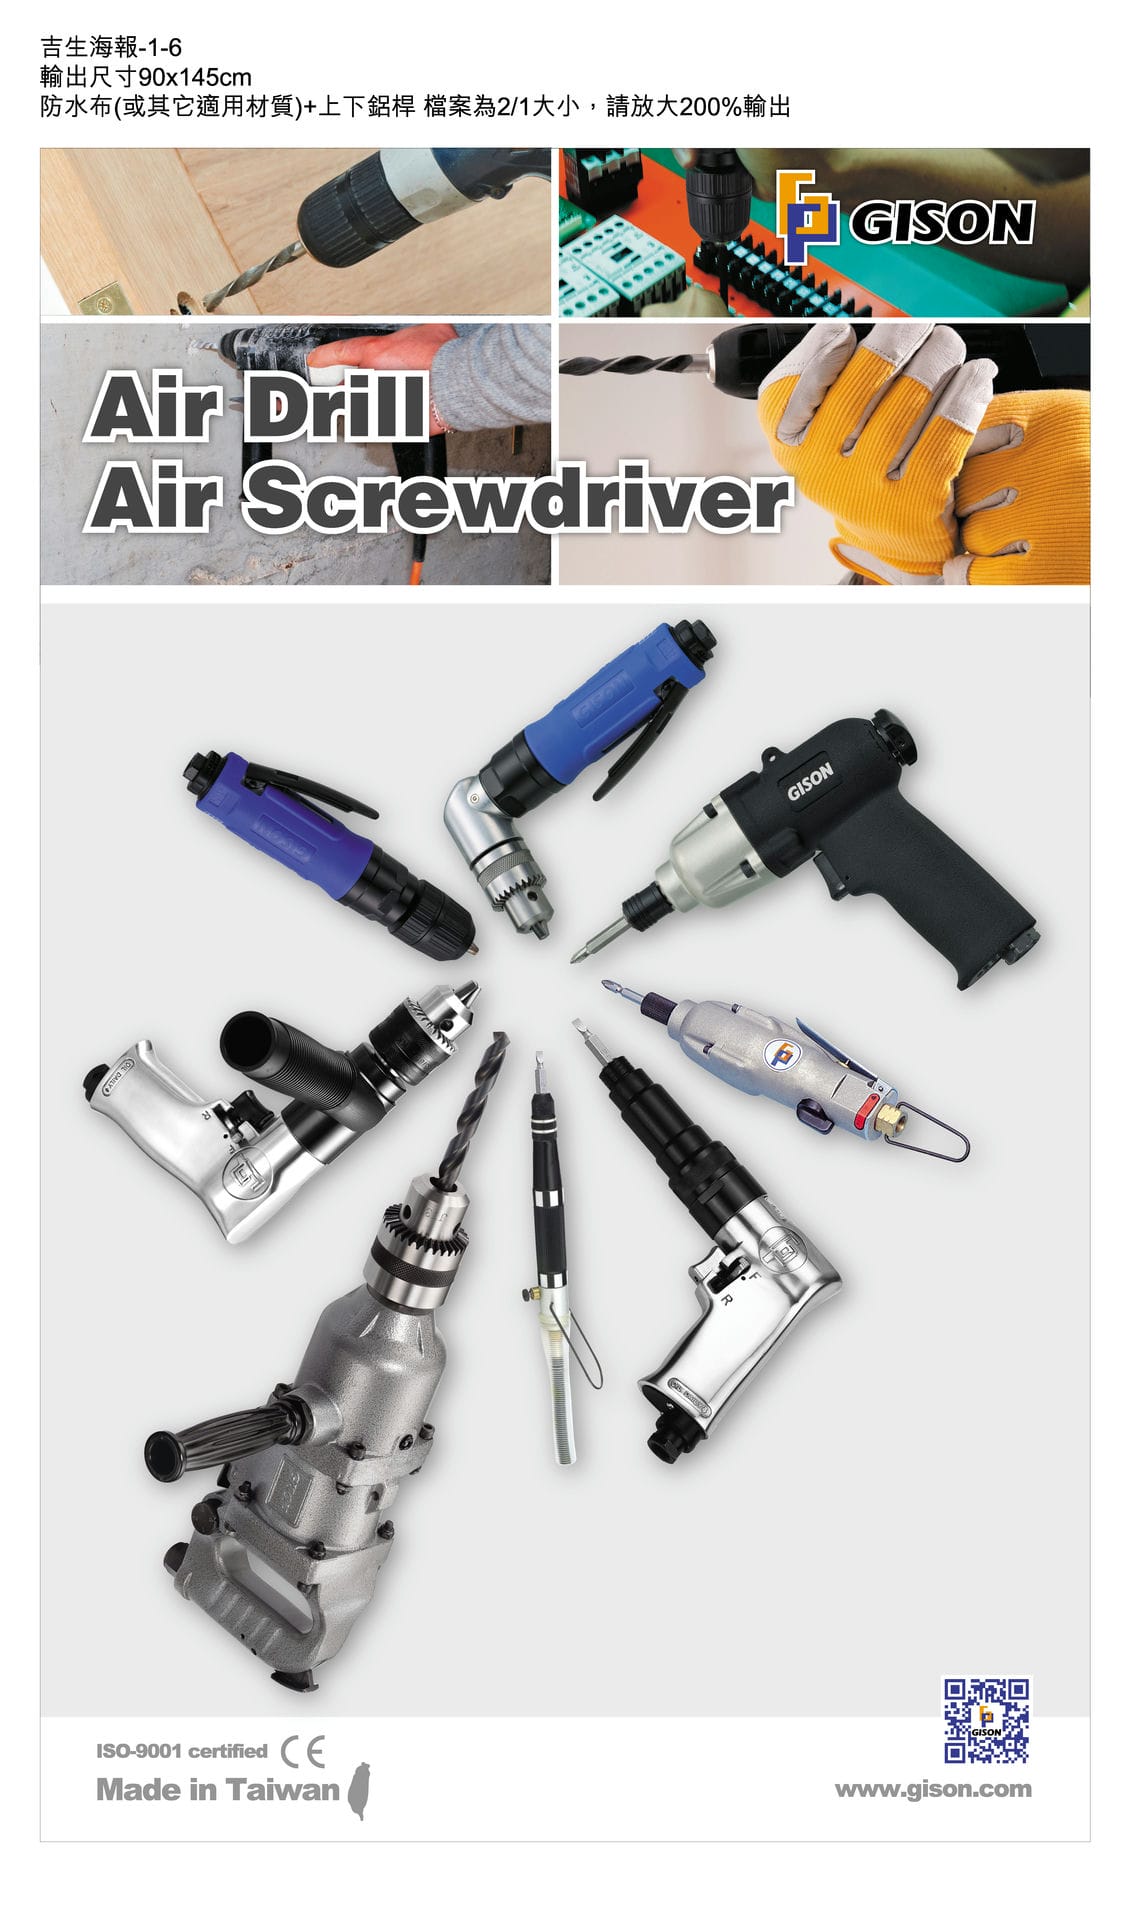 Air Drill / Air Screwdriver